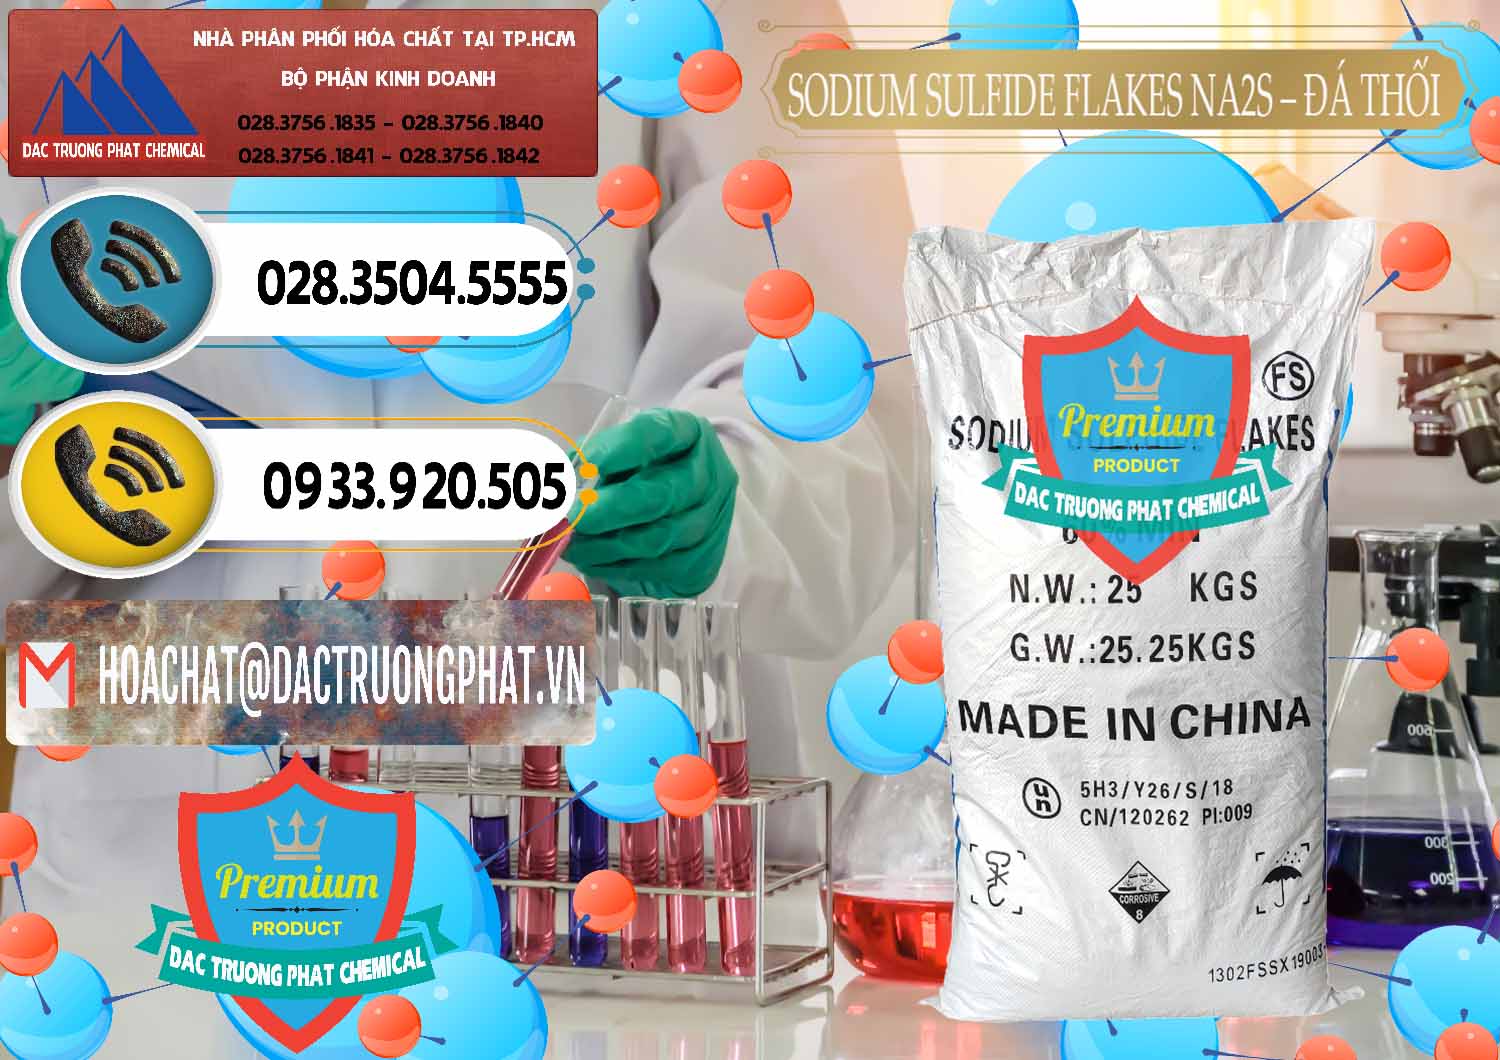 Cty kinh doanh _ bán Sodium Sulfide Flakes NA2S – Đá Thối Đỏ Trung Quốc China - 0150 - Phân phối và bán hóa chất tại TP.HCM - hoachatdetnhuom.vn